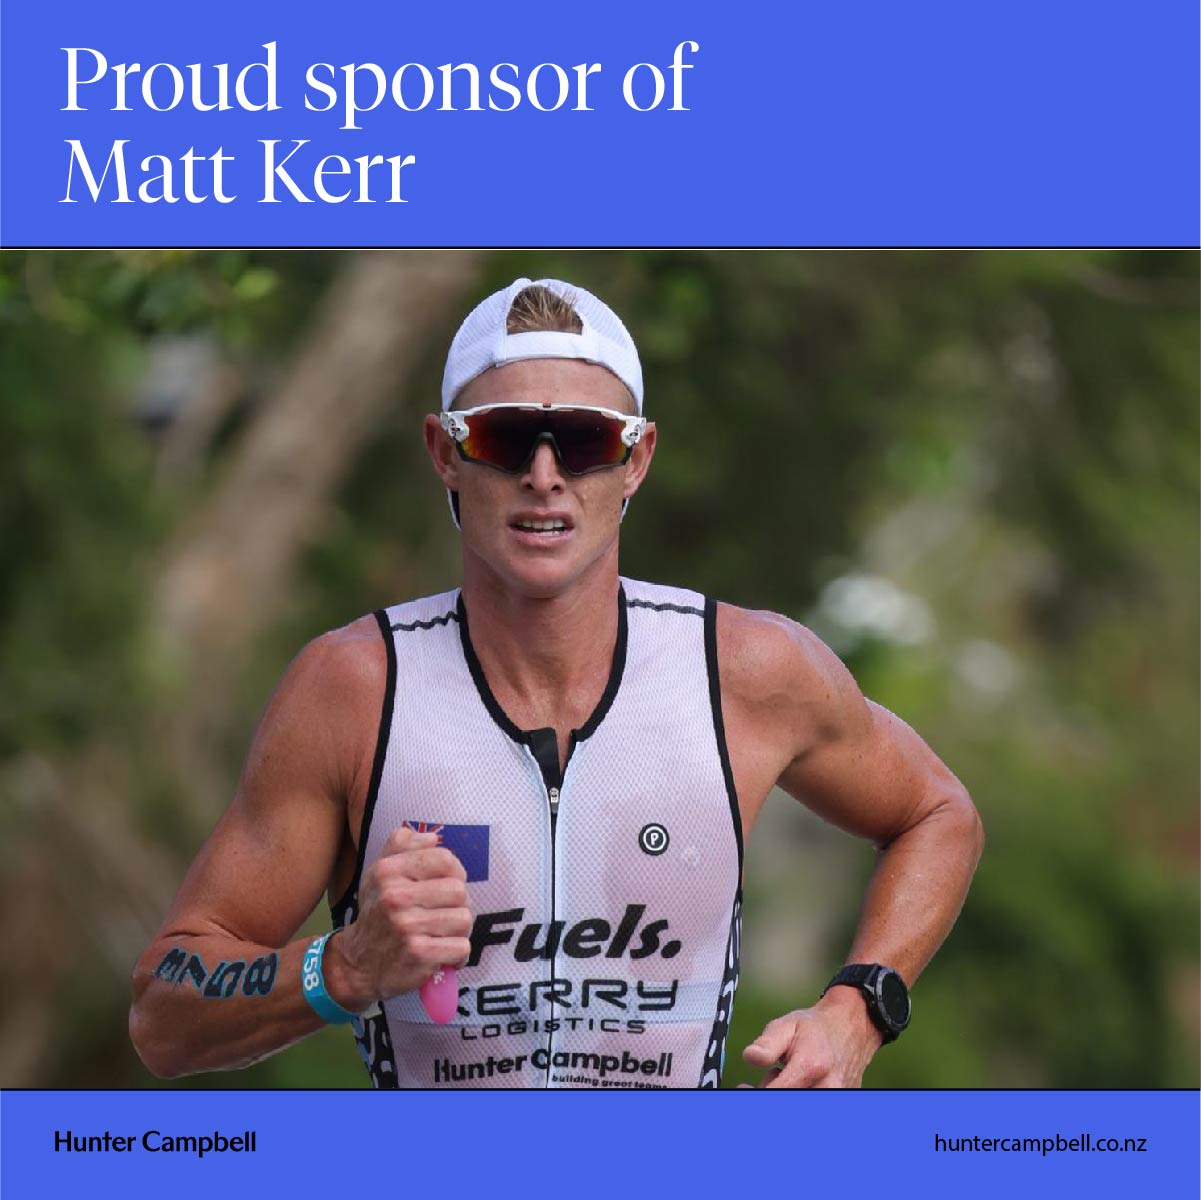 Matt Kerr wins the Noosa Triathlon